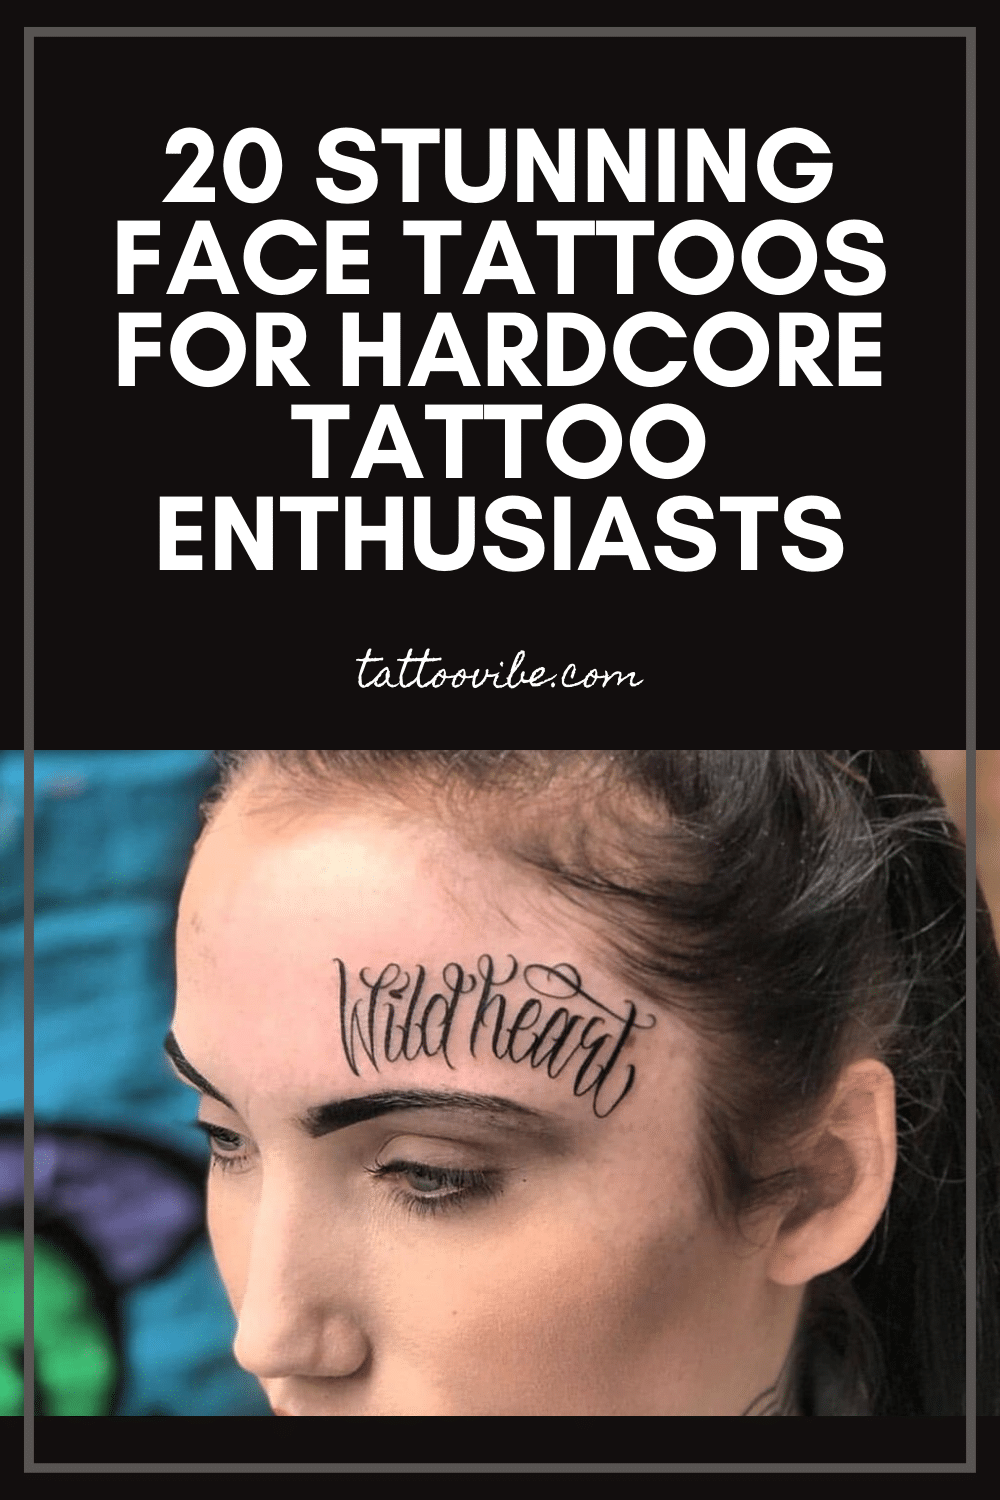 20 splendidi tatuaggi sul viso per gli appassionati di tatuaggi più accaniti